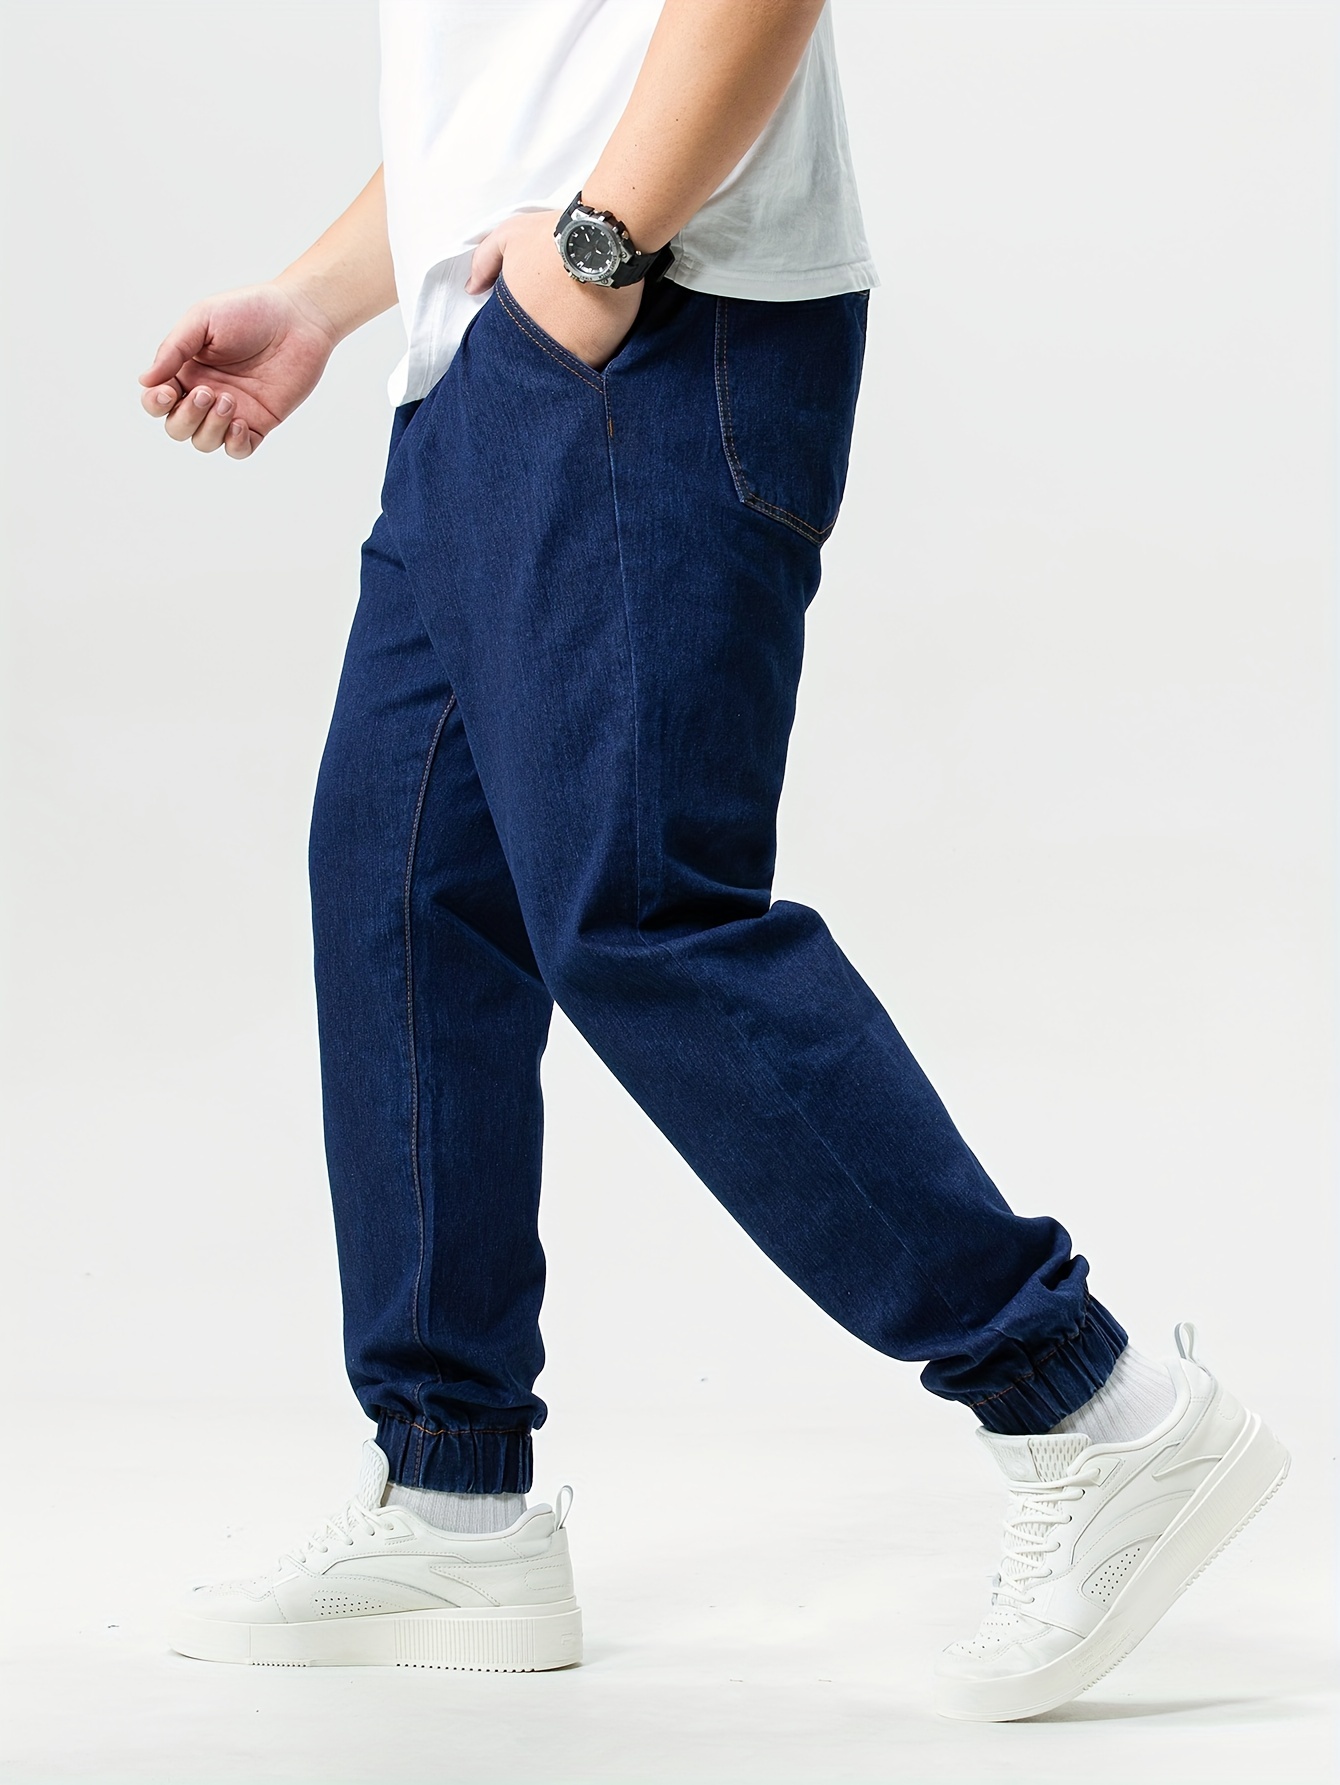 Moda Pantalones y Jeans/Vaqueros Hombre Otoño Invierno 2023